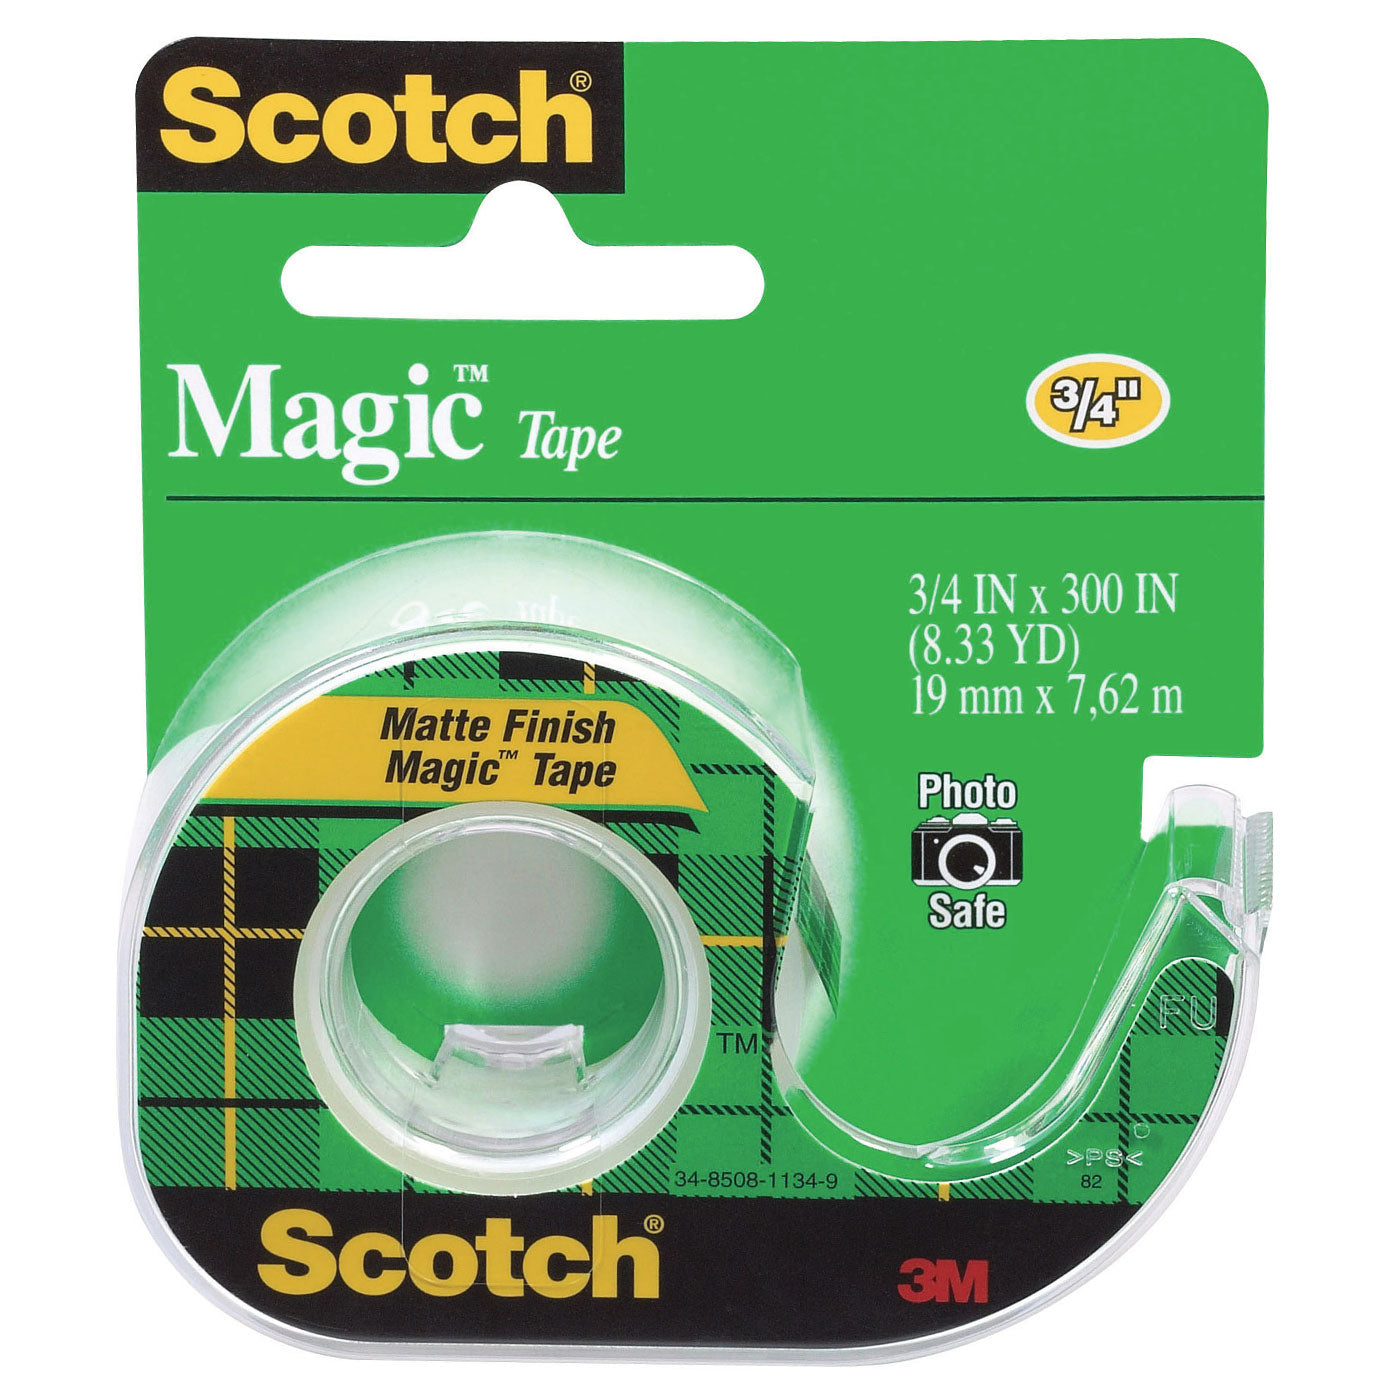 3M Scotch Magic Invisible Tape & Dispenser 19 x 7.62 m